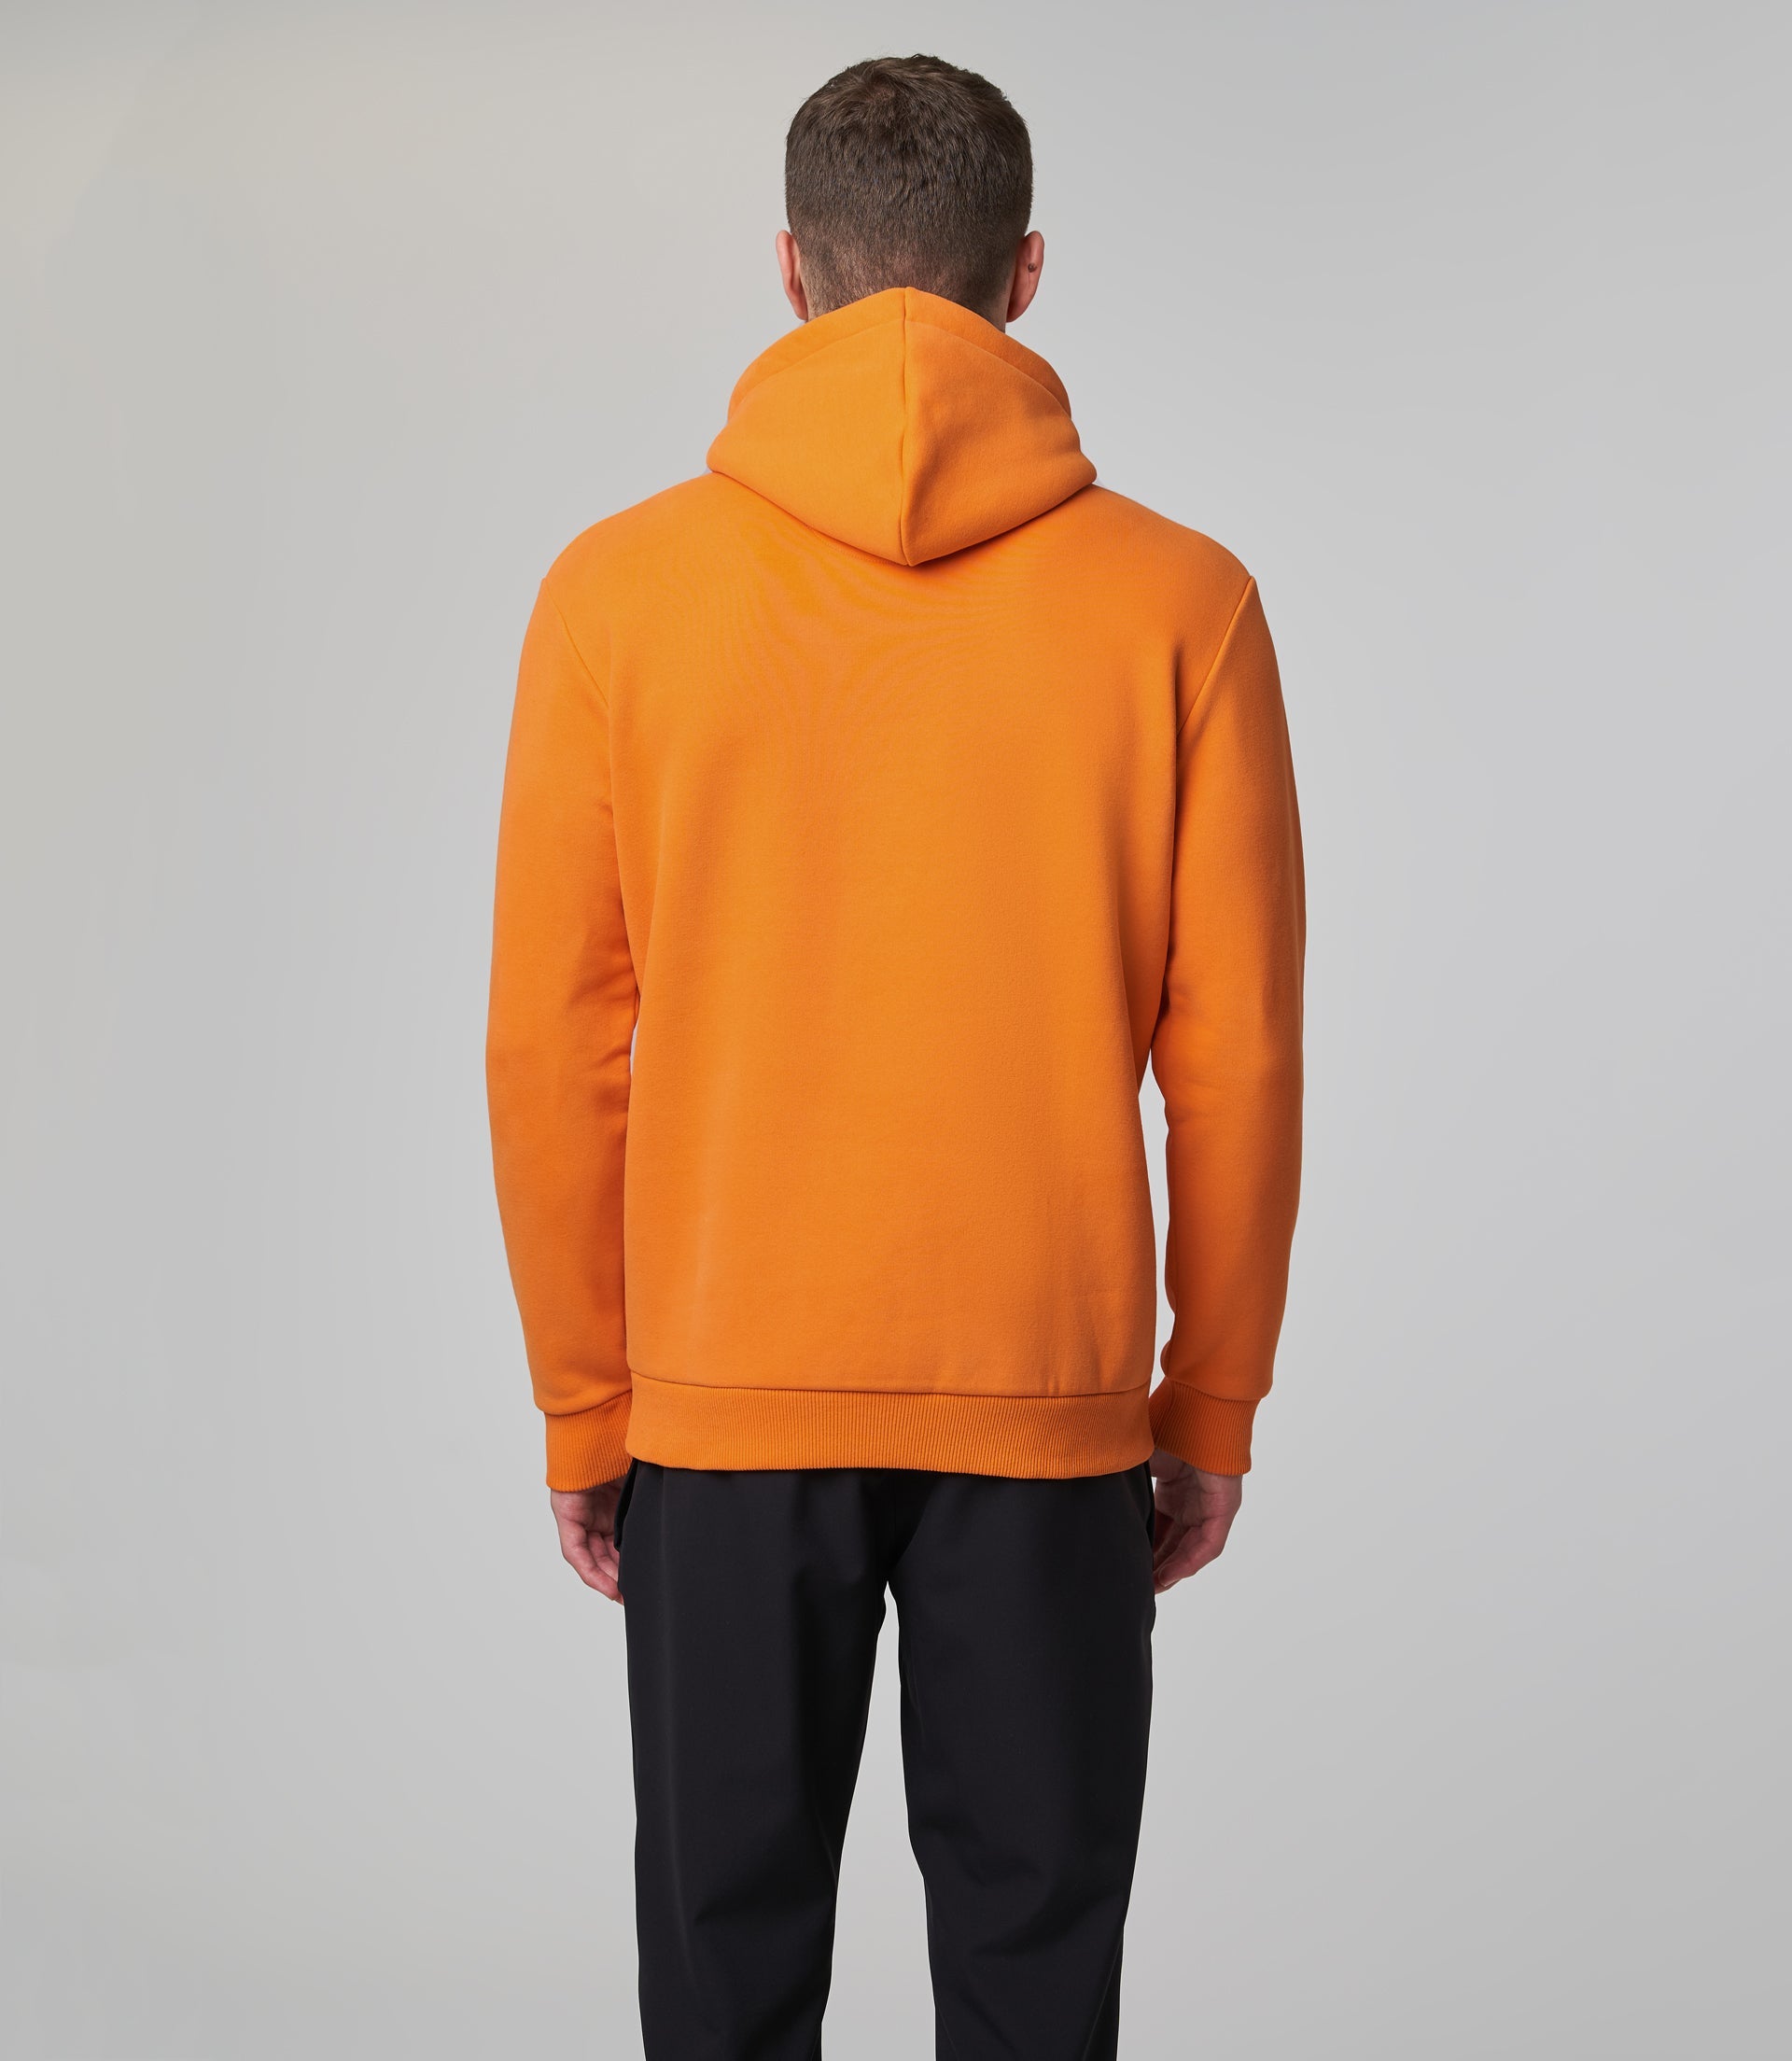 Mclaren F1 Men's Speedmark Logo Hooded Sweatshirt Orange